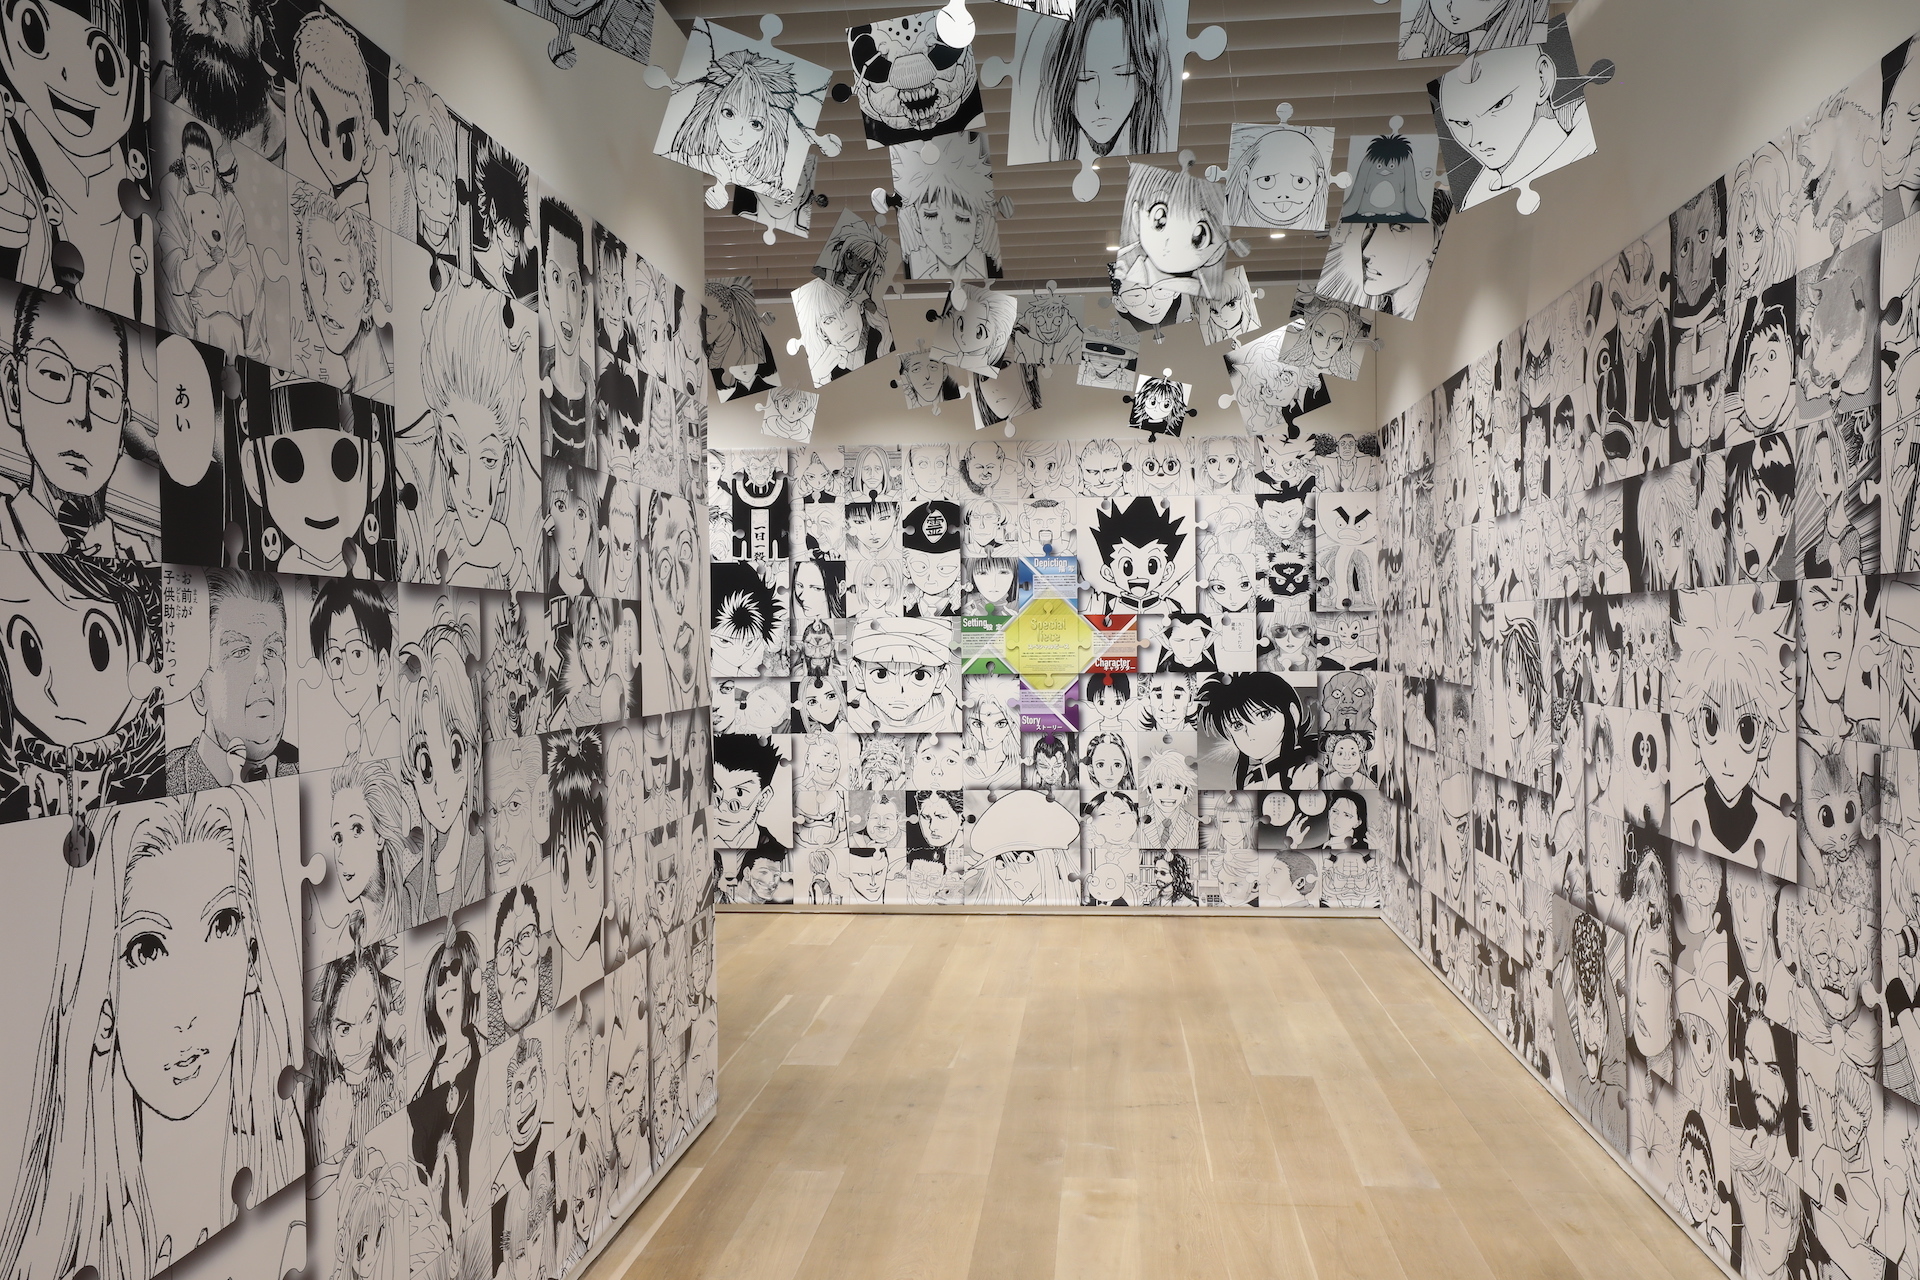 『冨樫義博展 -PUZZLE-』「プロローグエリア」（東京会場の様子） (c)Y.T.90-94 (c)Y.T.95-97 (c)P98-23 (c)Y.T.89-90 ※展示画像は終了した東京会場の様子。大阪会場の展示内容とは異なる。